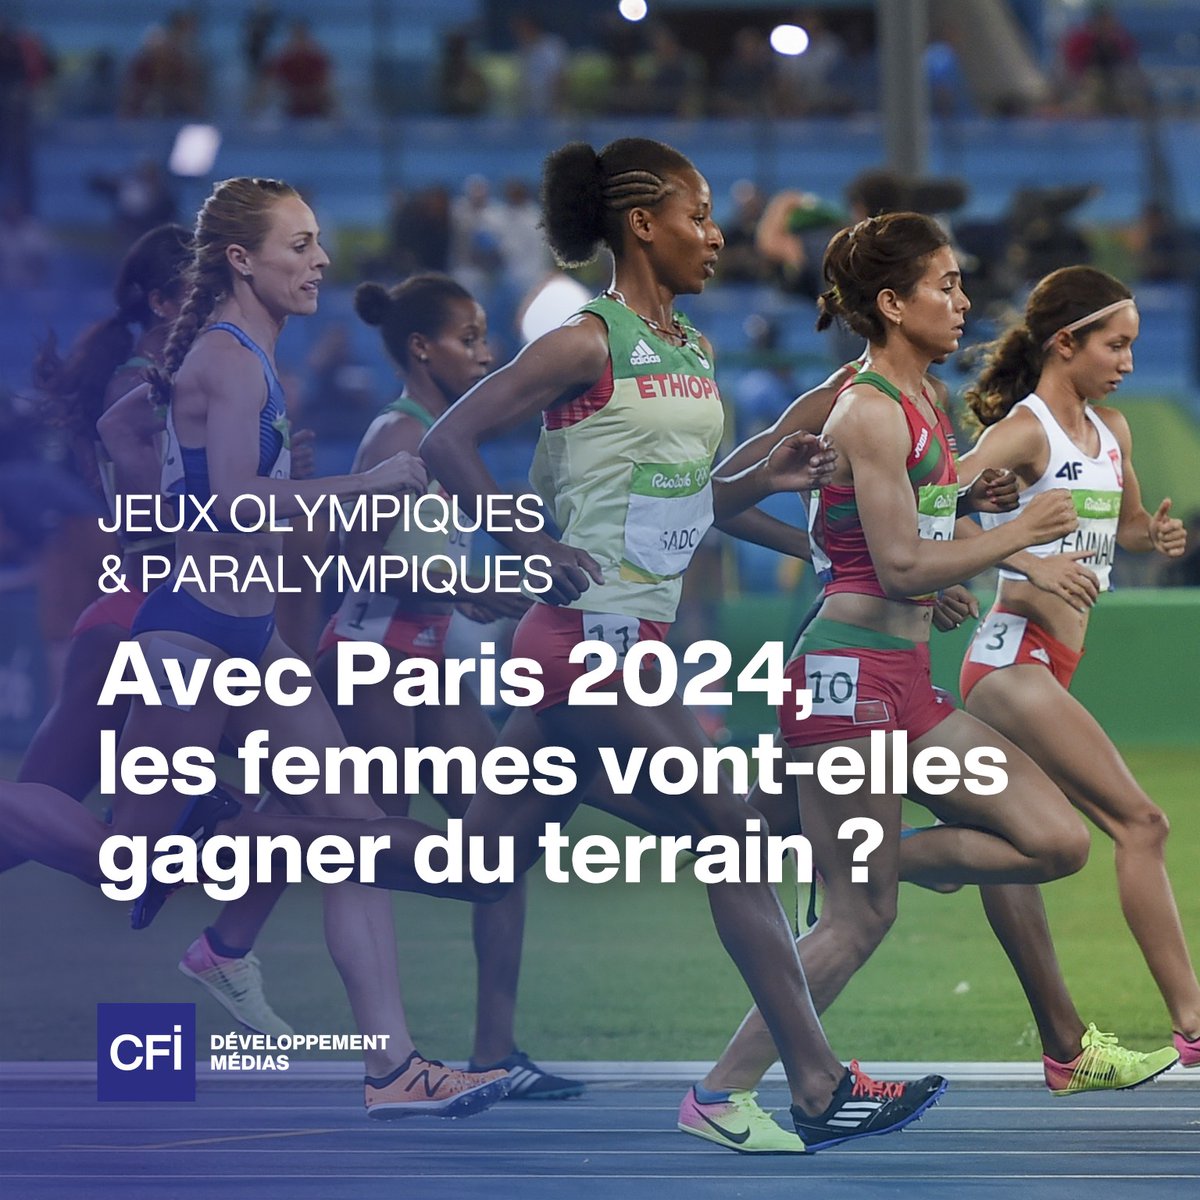 🔵 Paris Médias 2024, un projet CFI pour valoriser le sport féminin dans le monde arabe.

🔹En savoir plus 👉 bit.ly/3WHcaSh
#CFImédias #ProjetEnAction #Paris2024 #ParisMédias2024 #JO2024 #JeuxOlympiques #JeuxParalympiques #ÉgalitéFemmesHommes #ÉgalitéDesSexes